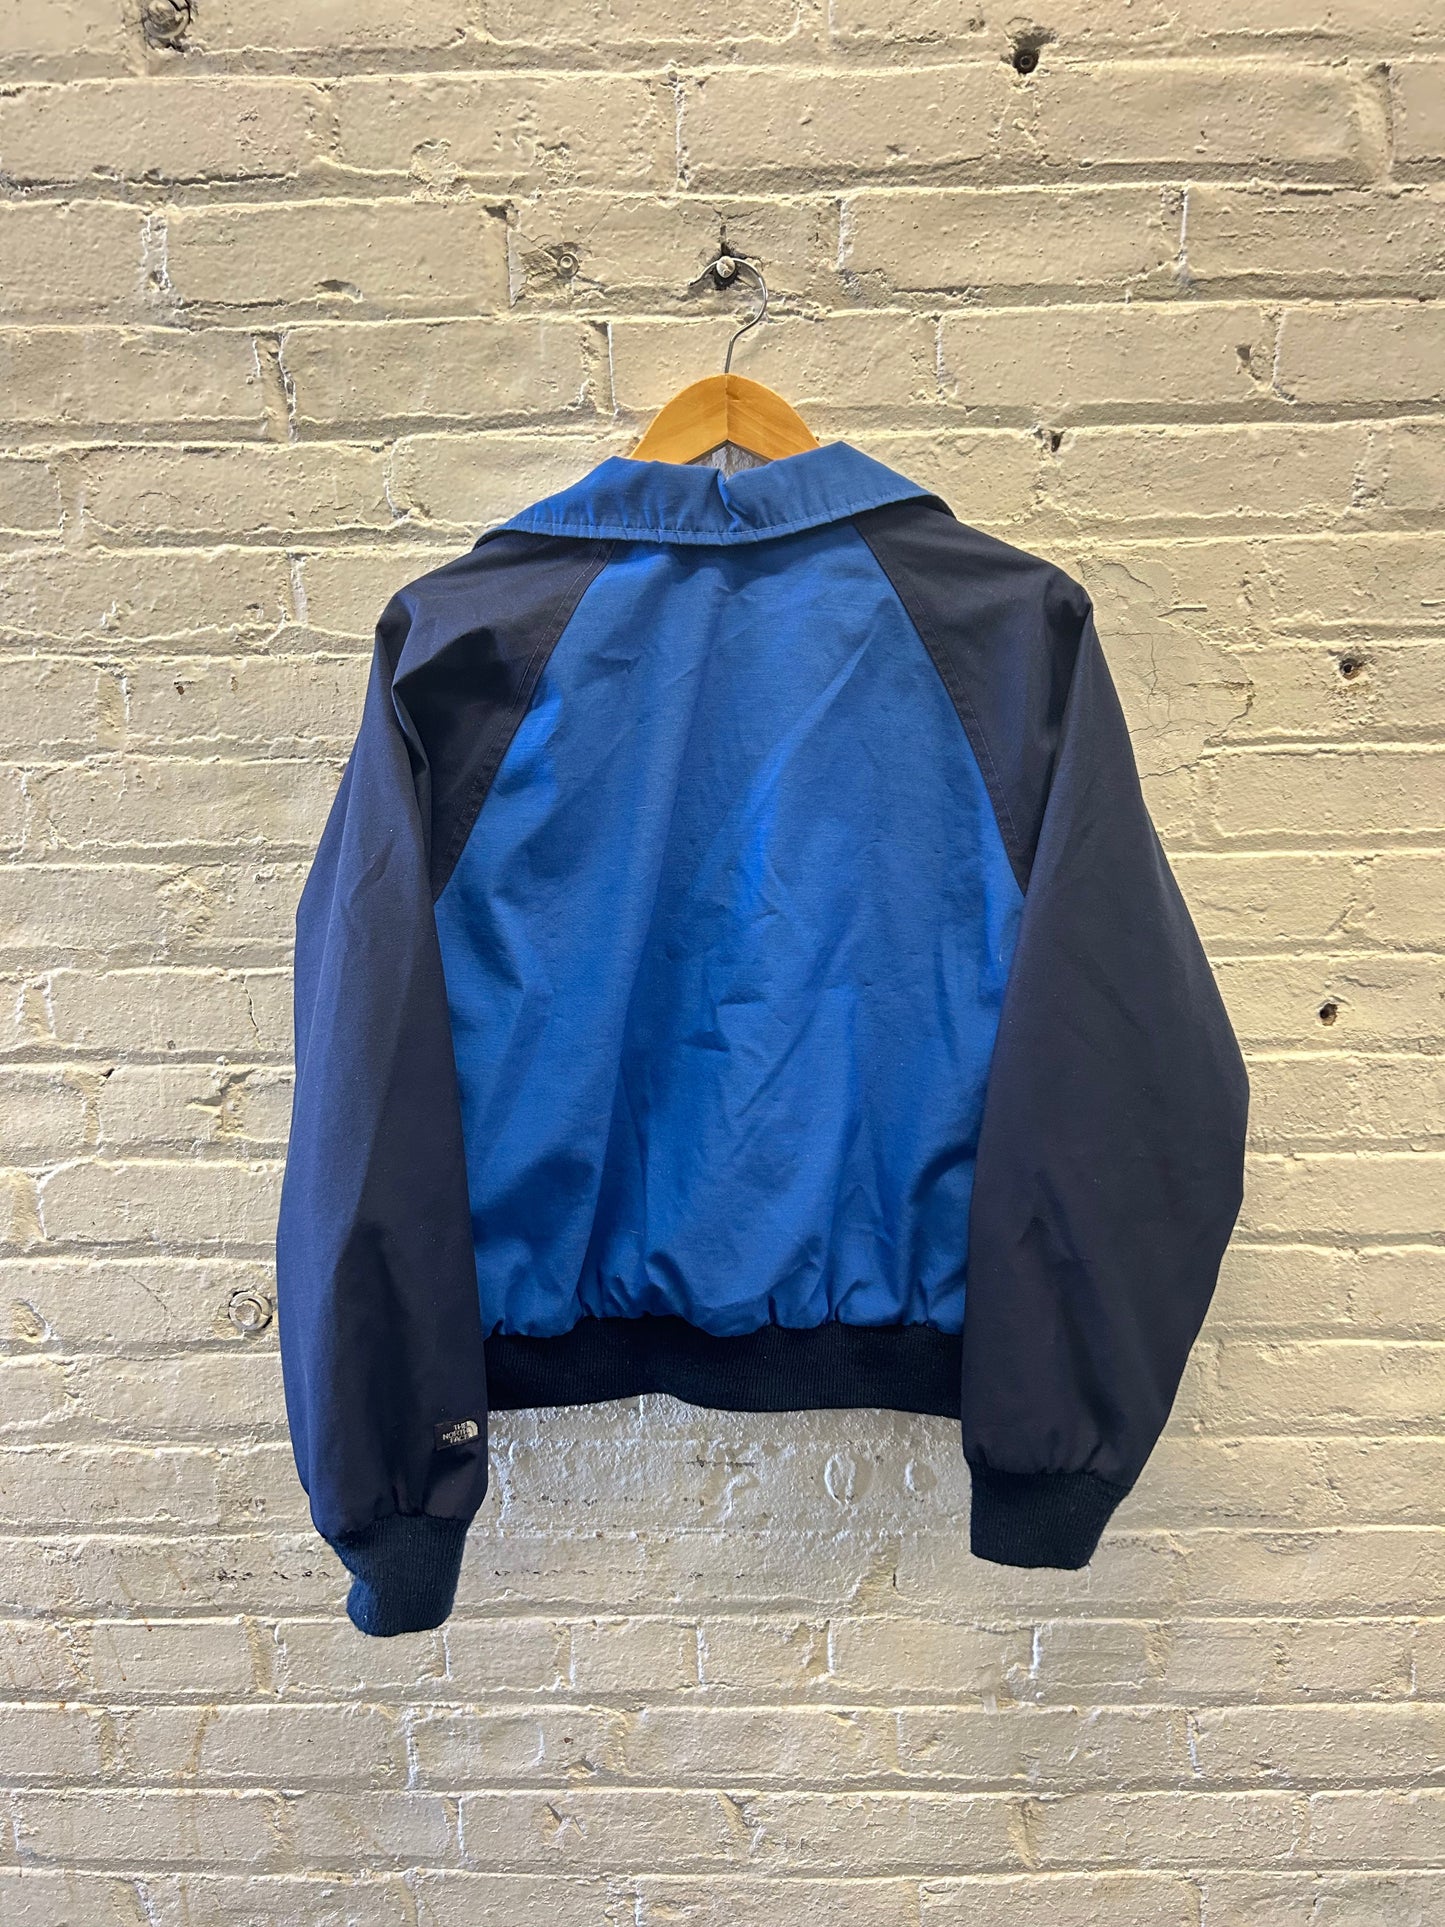 North Face Blue Zip-Up Jacket - Medium